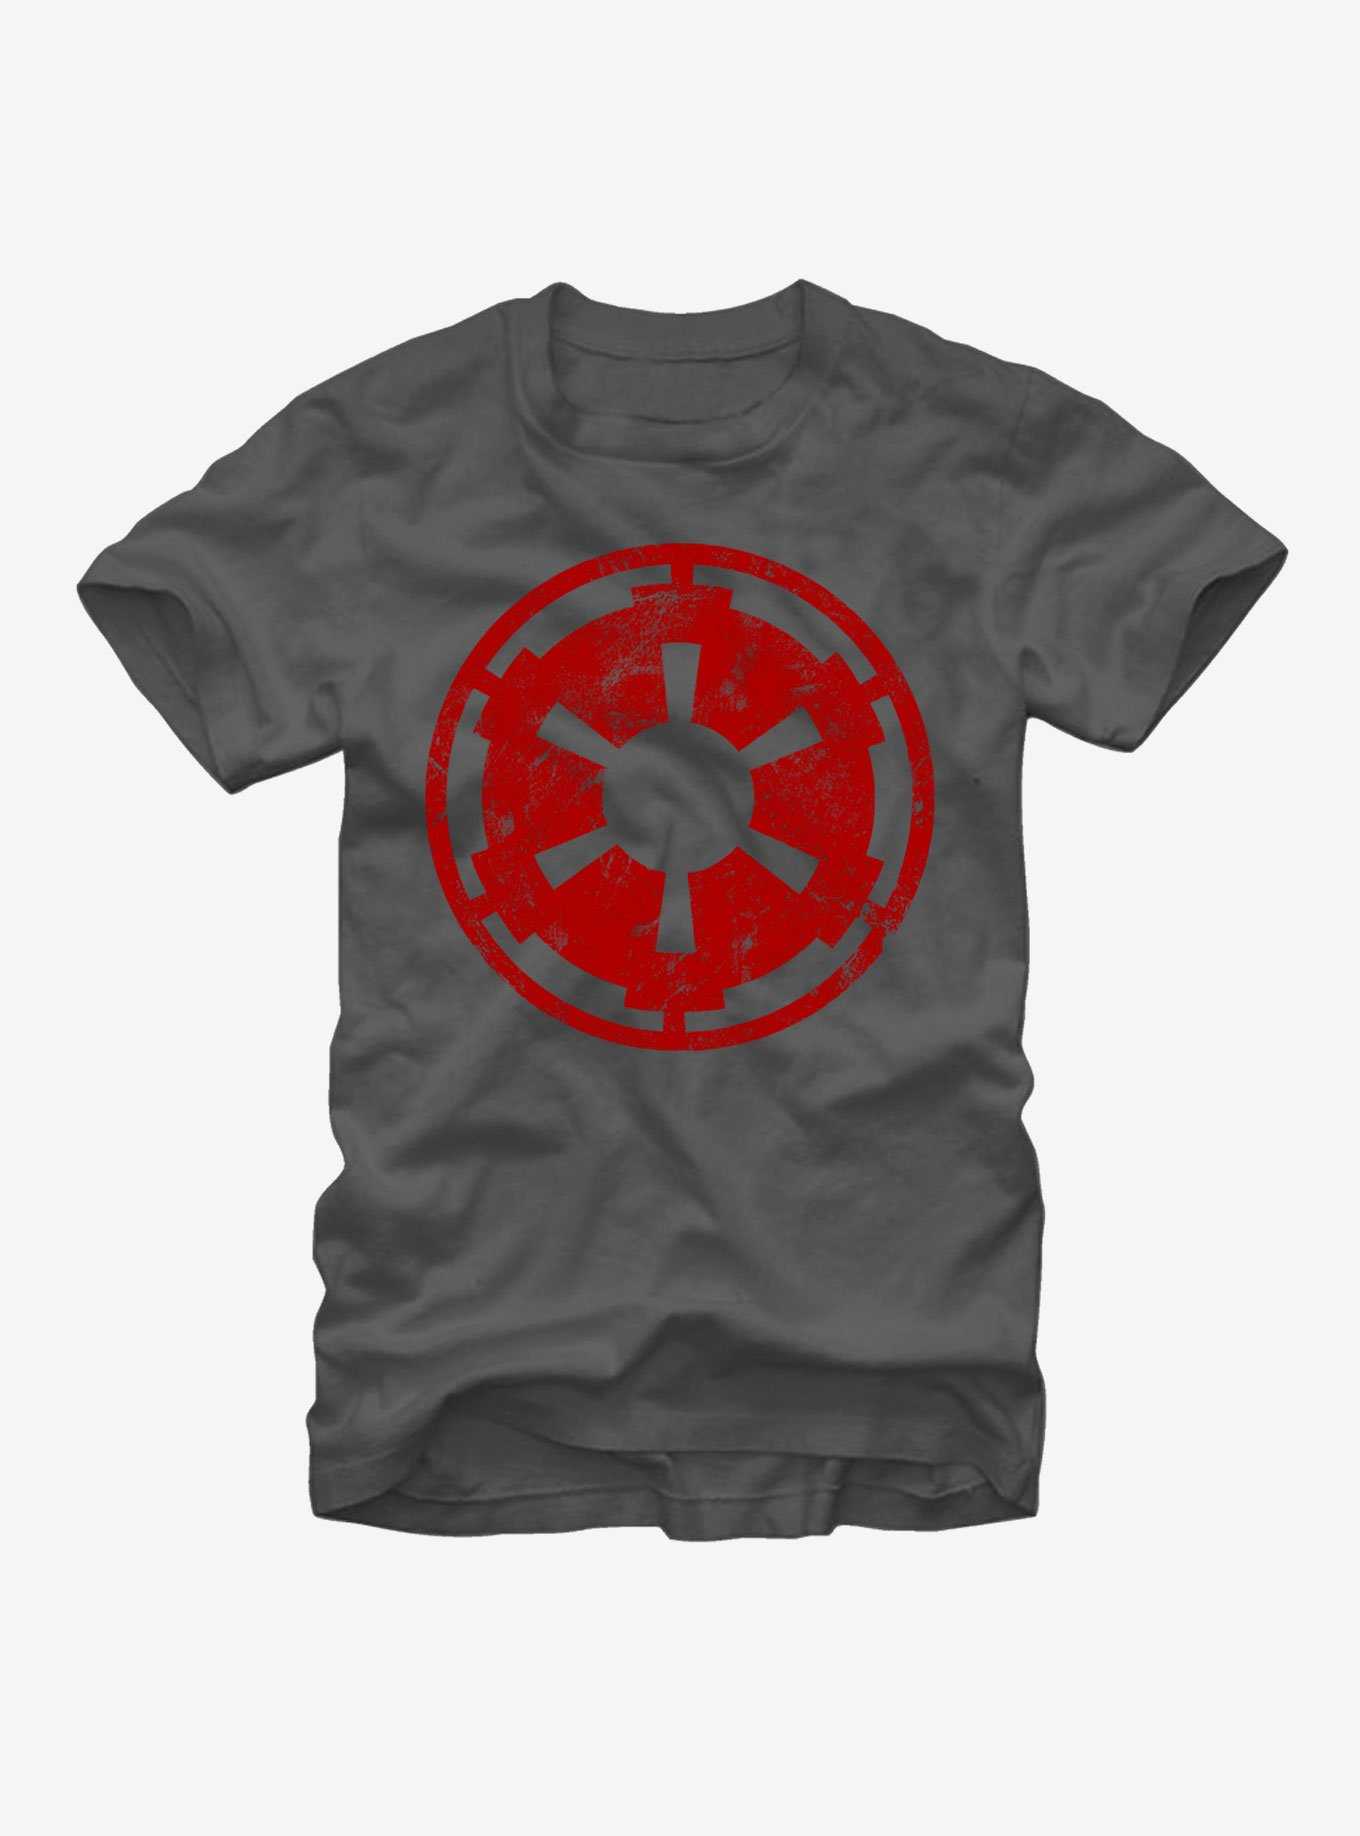 Star Wars Empire Emblem T-Shirt, , hi-res